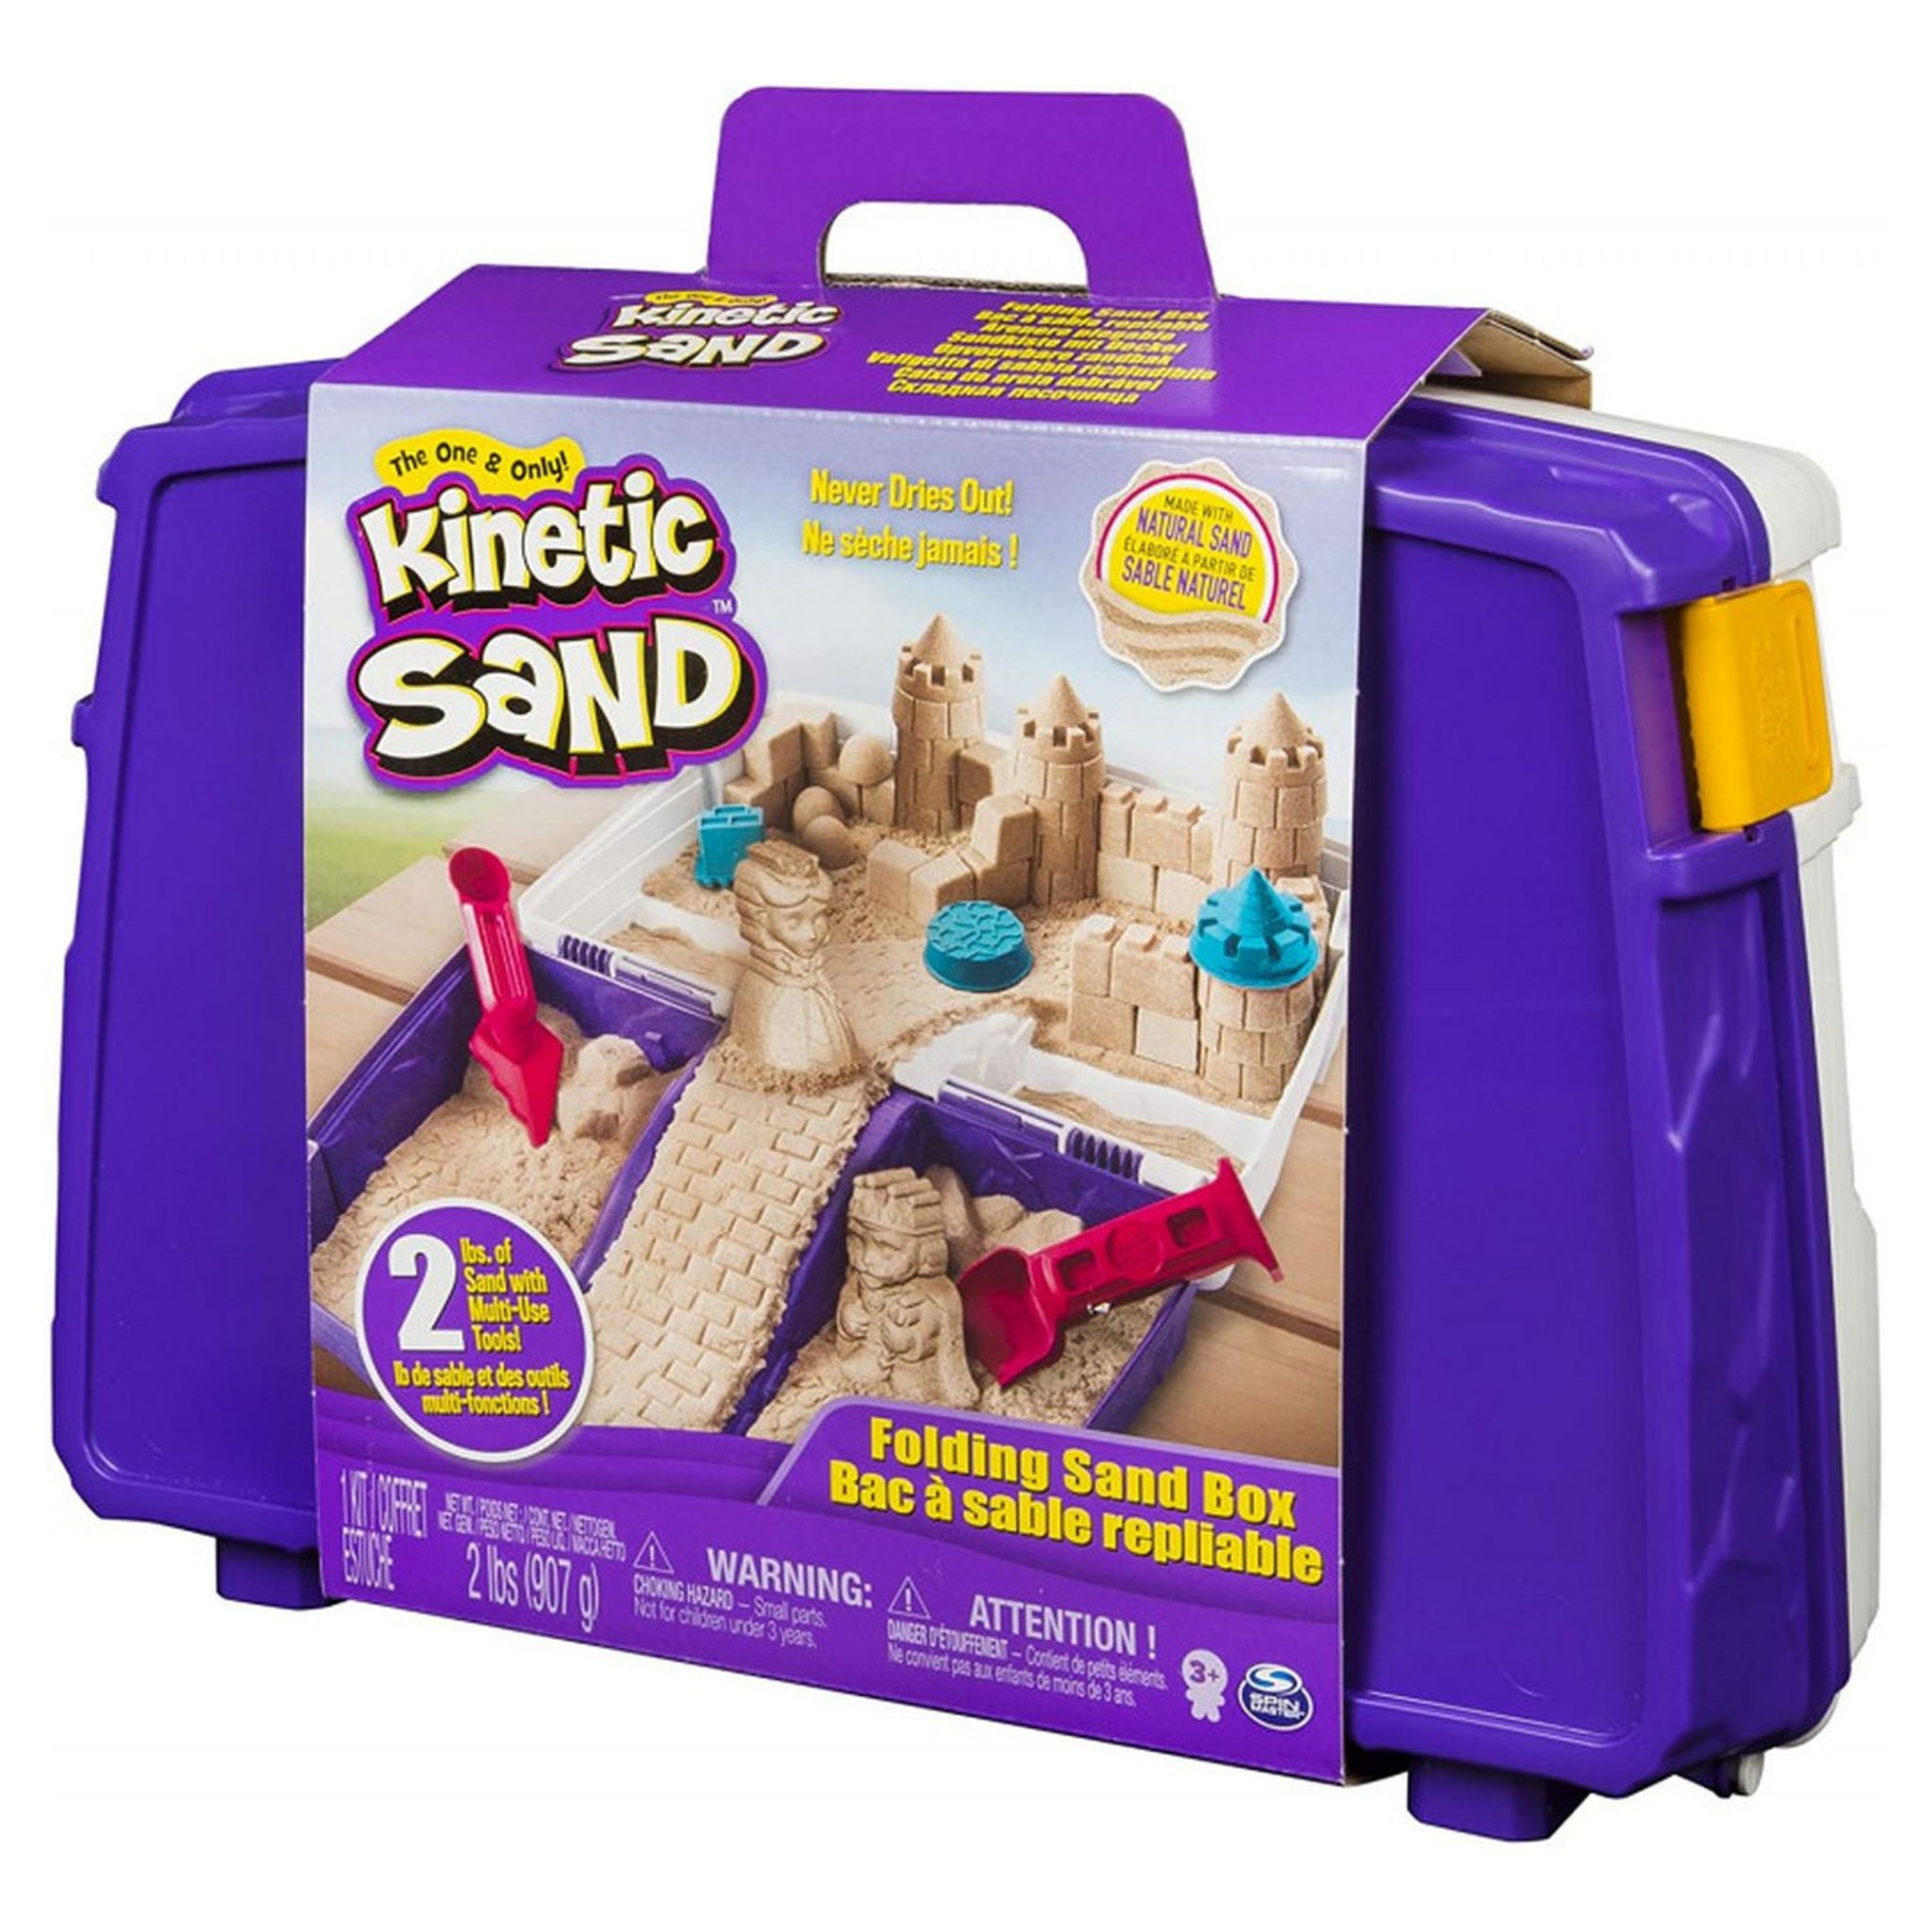 Kinetic Sand - Recharge de Sable Naturel - 907g - Pour Enfants dès